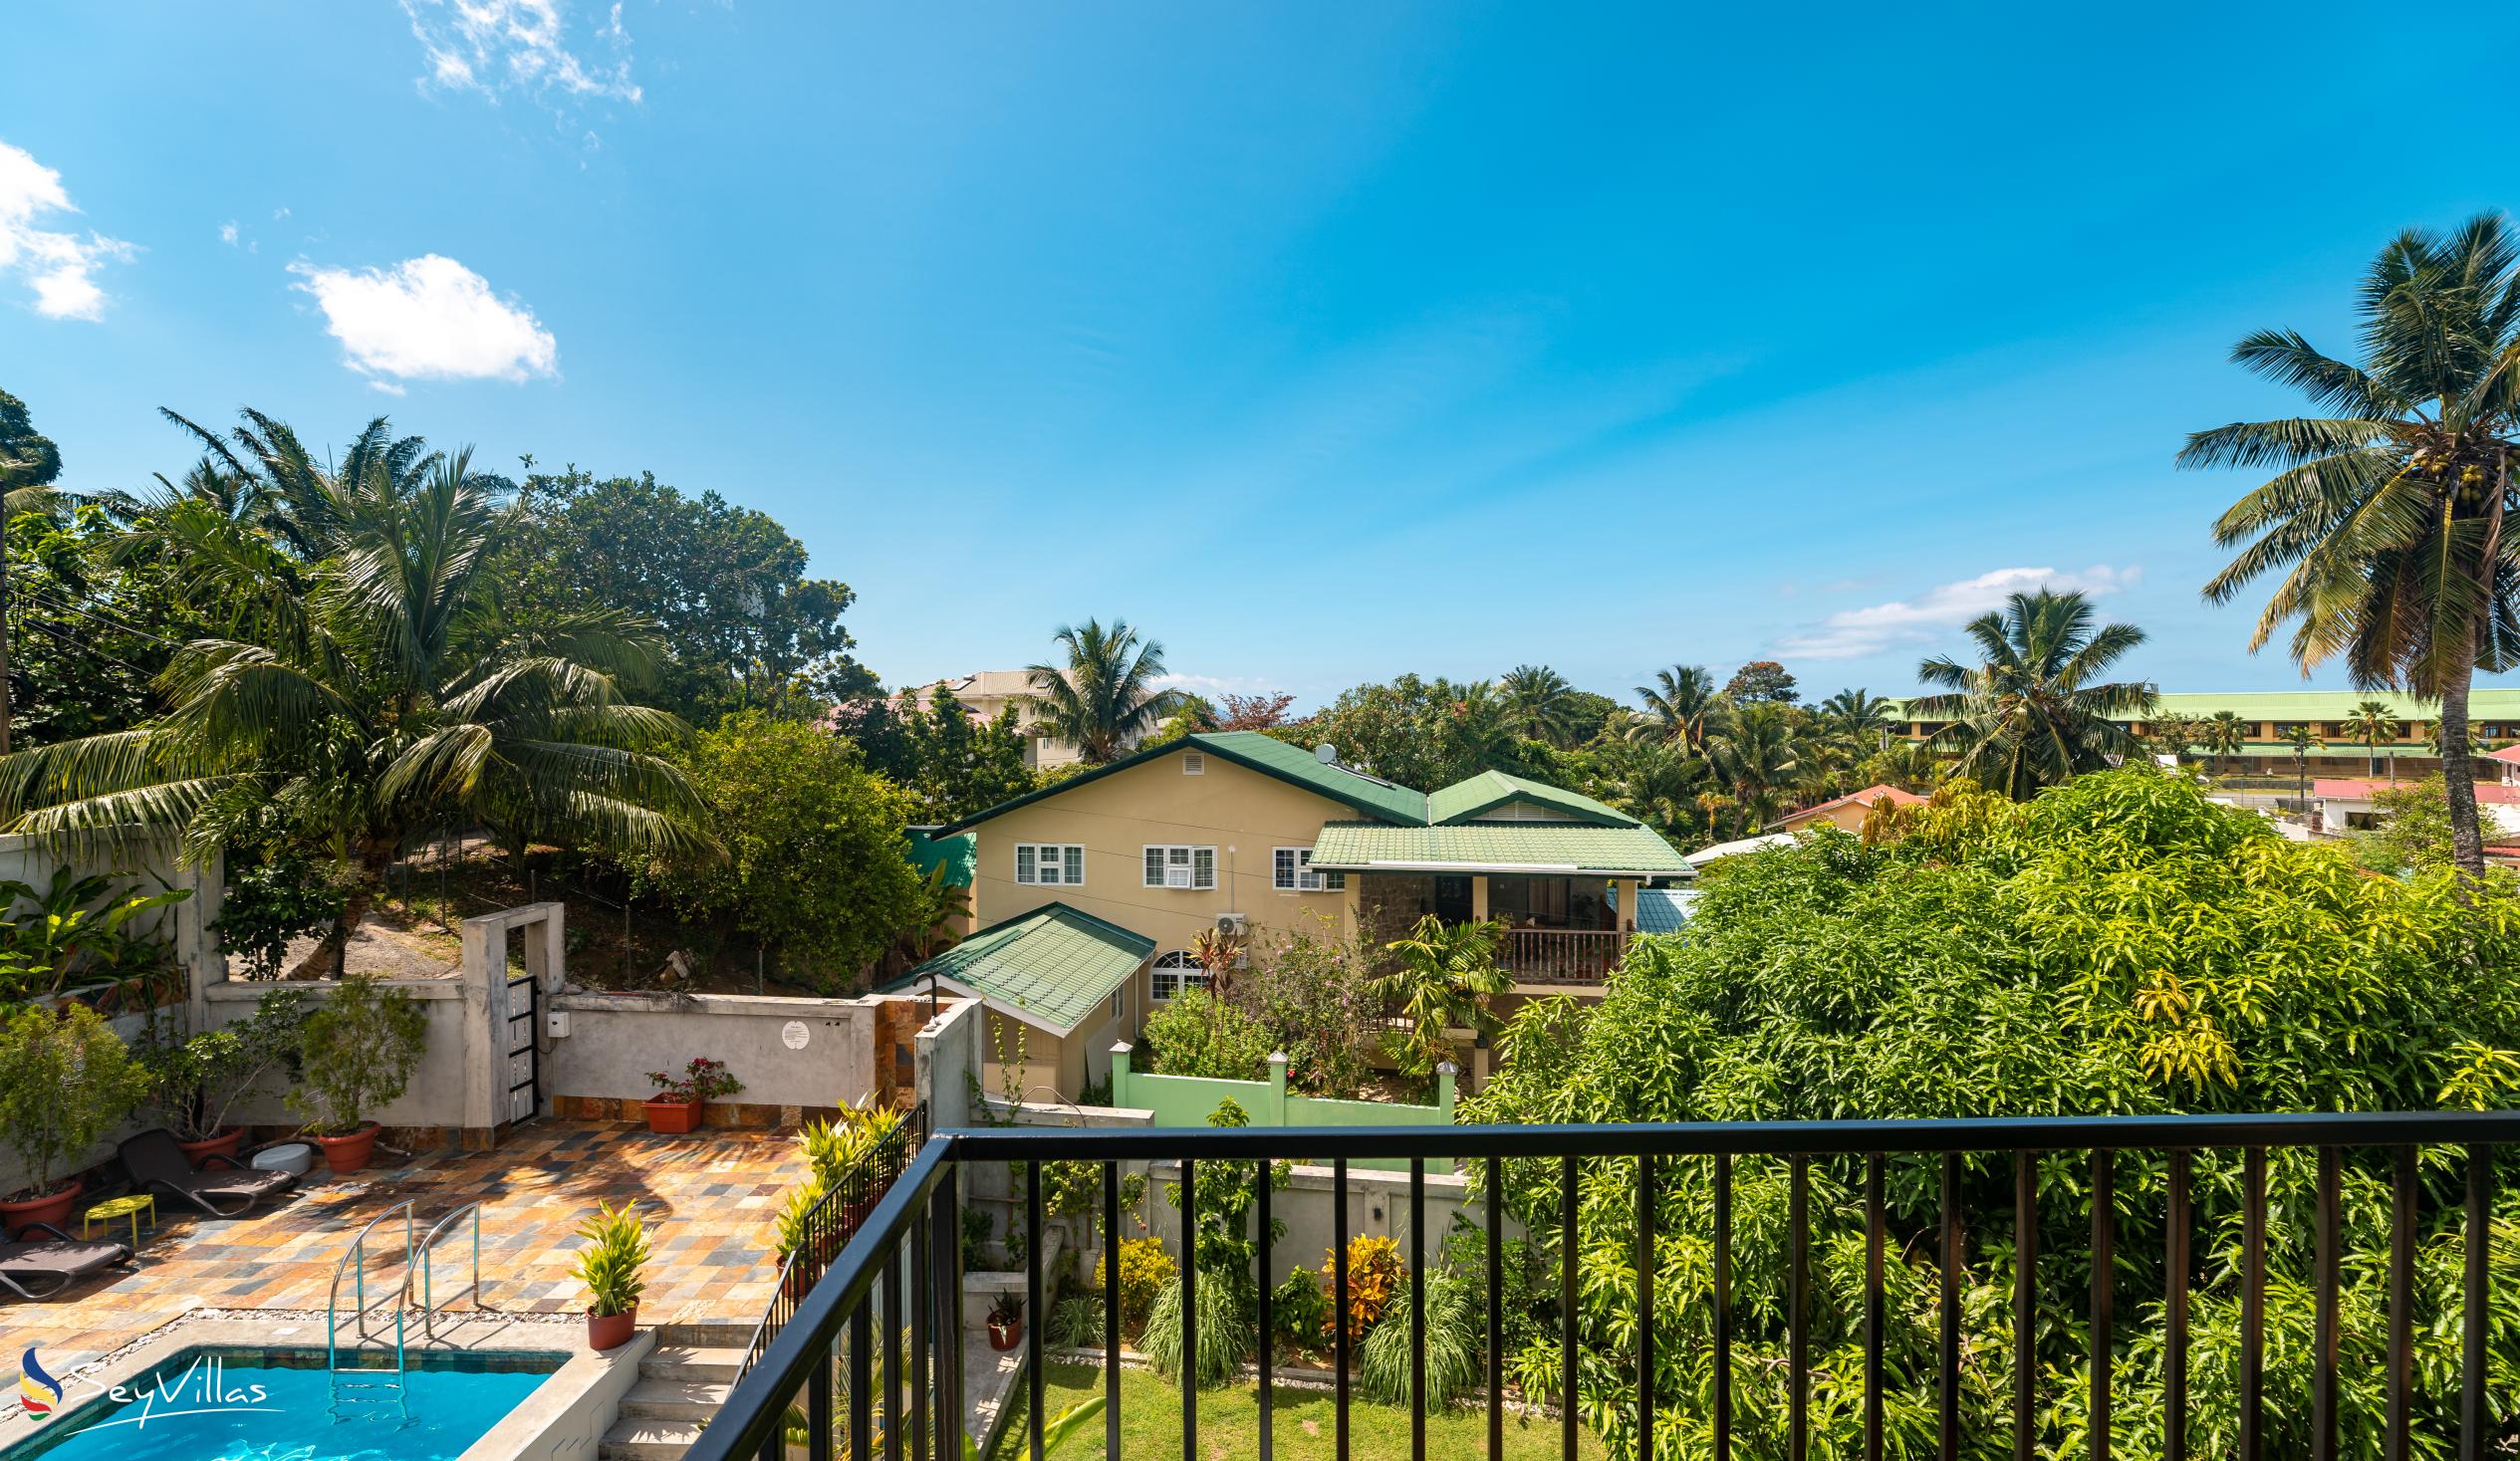 Foto 149: Lodoicea Apartments - Appartamento Zavoka - Mahé (Seychelles)